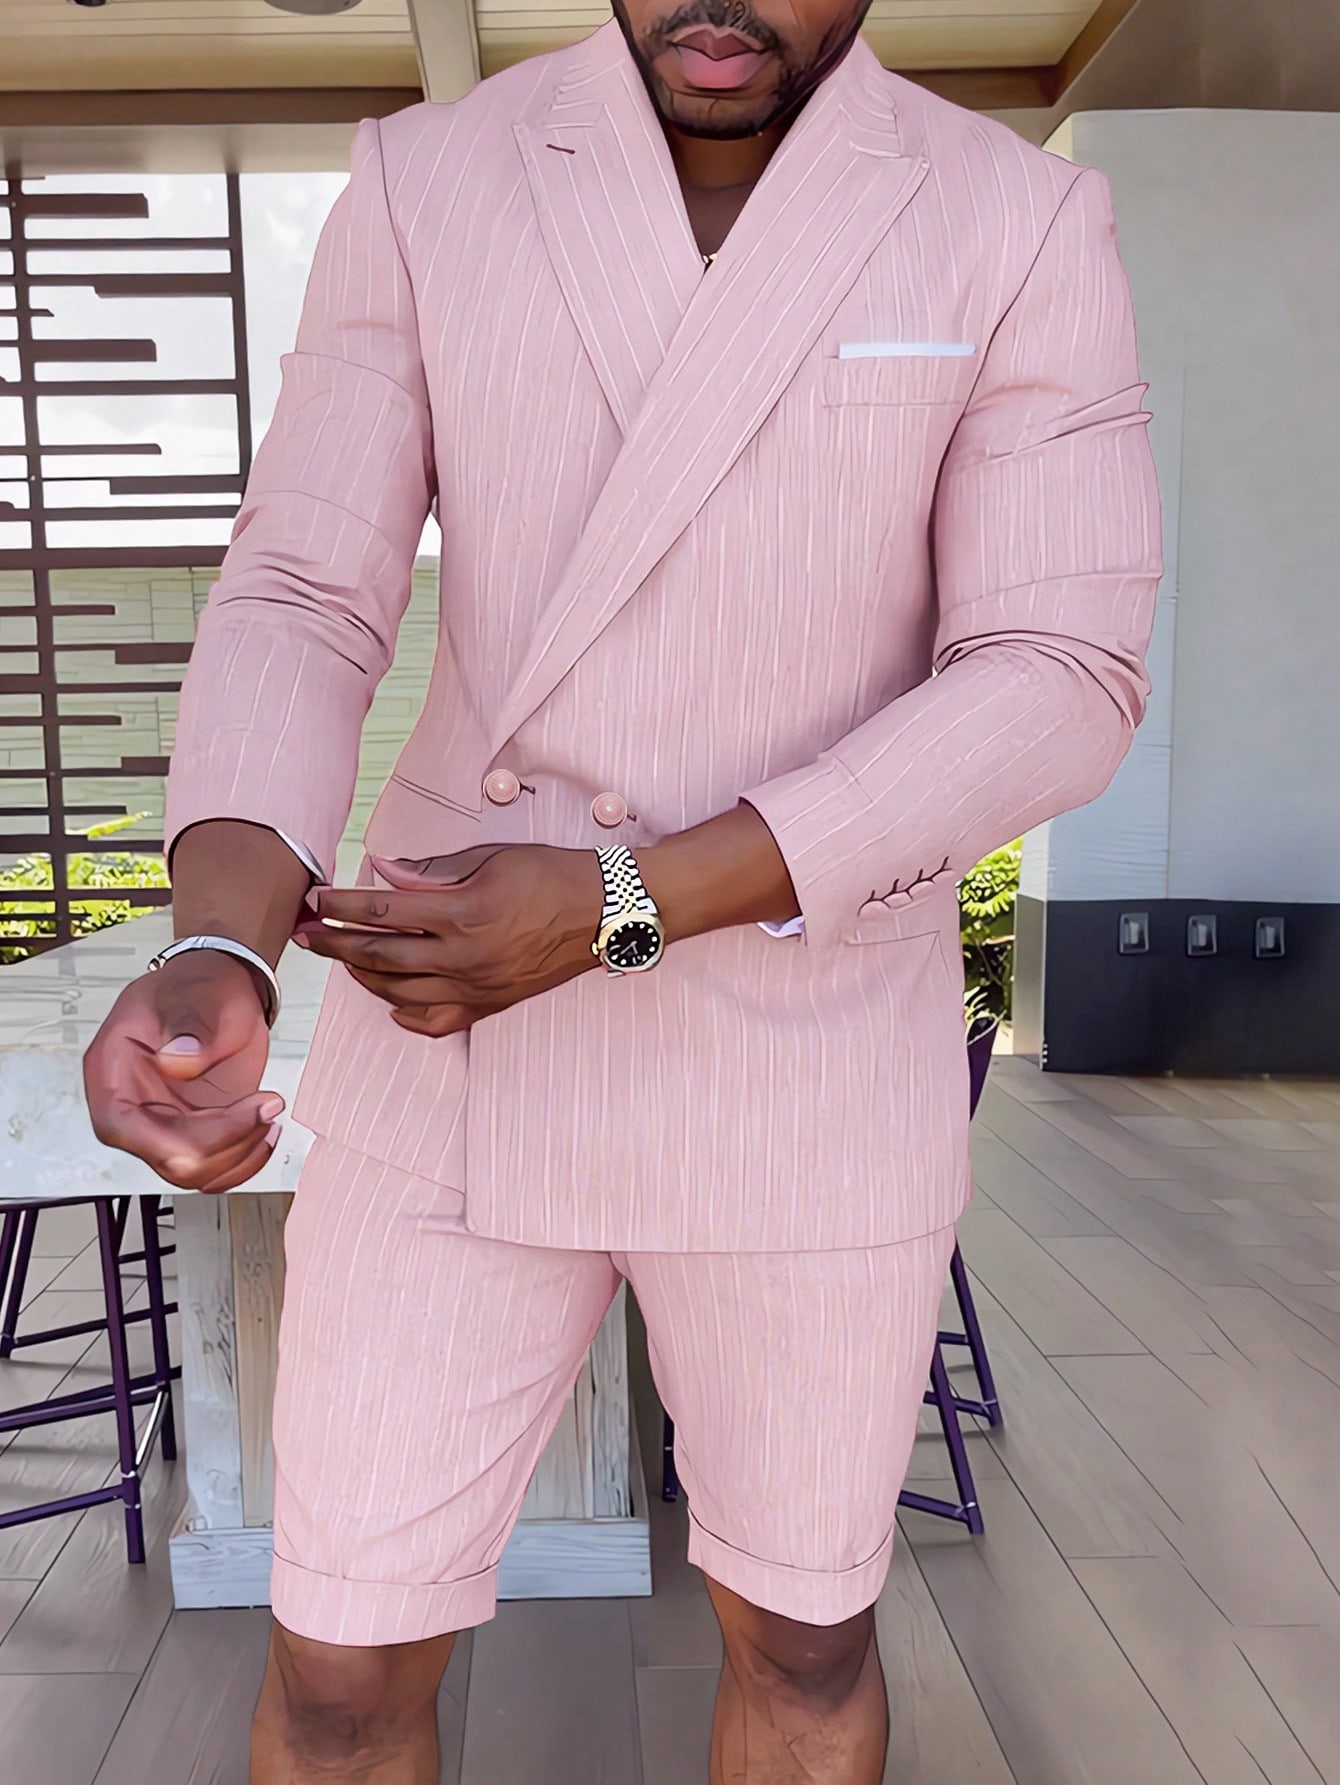 Manfinity AFTRDRK Мужской двубортный костюм в полоску с острыми лацканами, розовый костюм мужской роскошный коричневый из блейзера с лацканами 2 предмета